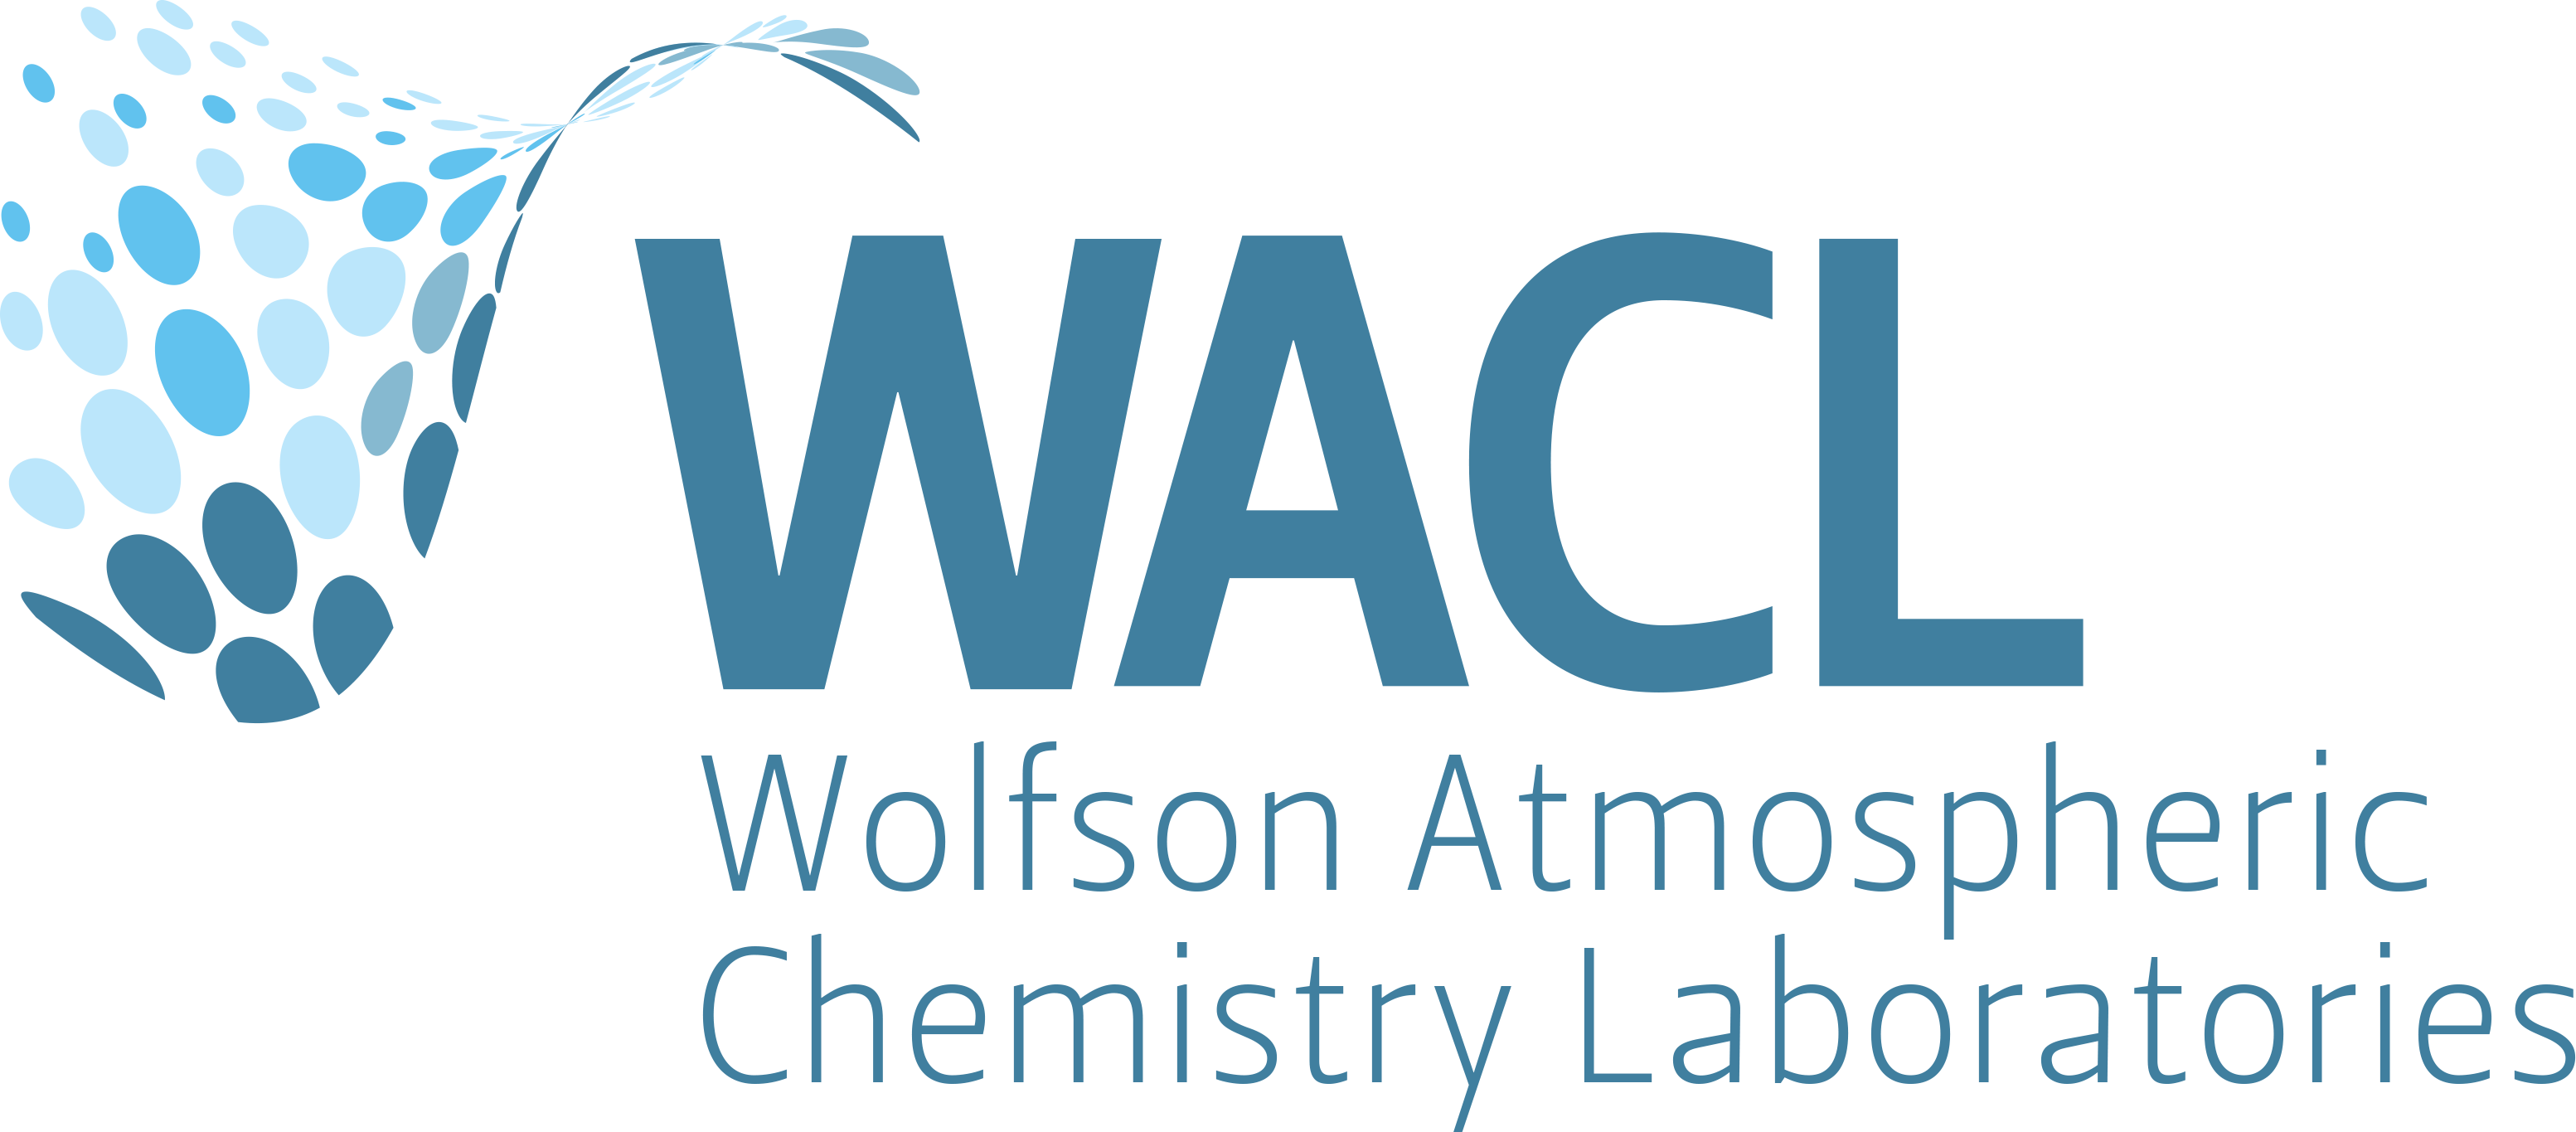 WACL logo